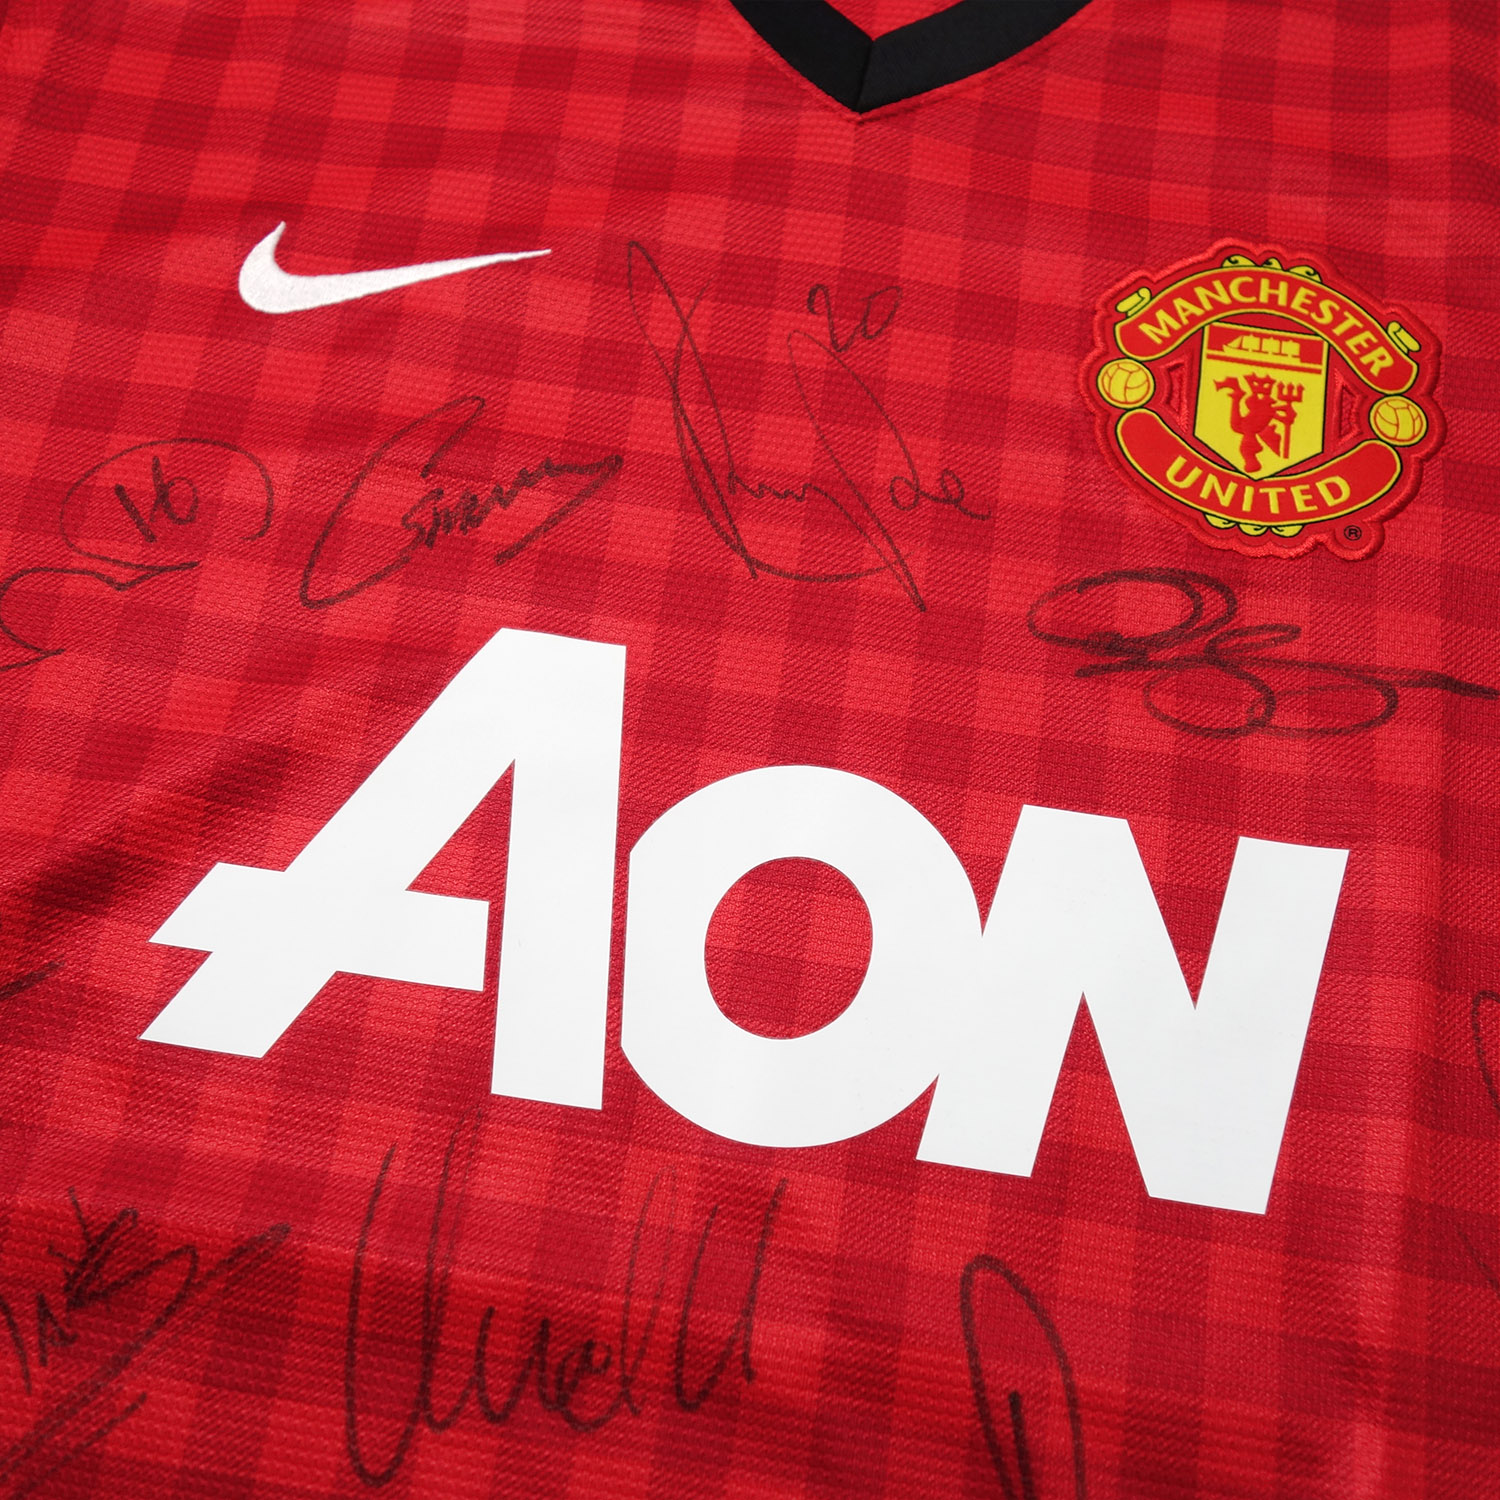 マンチェスターユナイテッド マルチ直筆サイン入り12/13ホームユニフォーム / Manchester United multi signed  12/13 home replica shirt